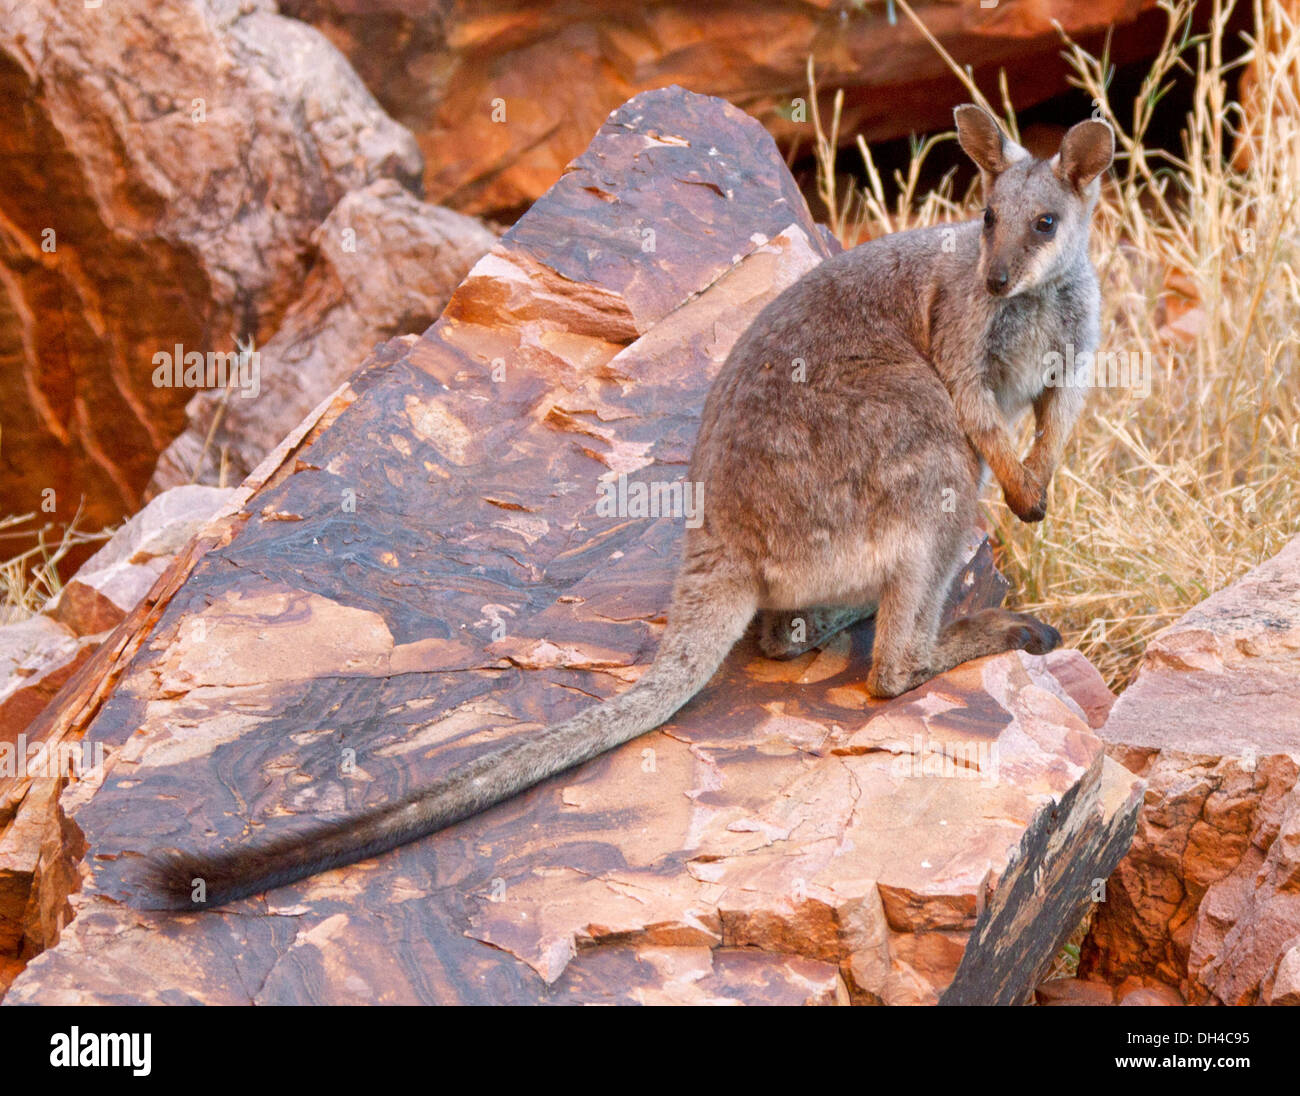 Rare black-footed rock wallaby Petrogale lateralis sur des roches à l'état sauvage à Simpson's Gap dans West MacDonnell Ranges près d'Alice Springs NT Australie Banque D'Images